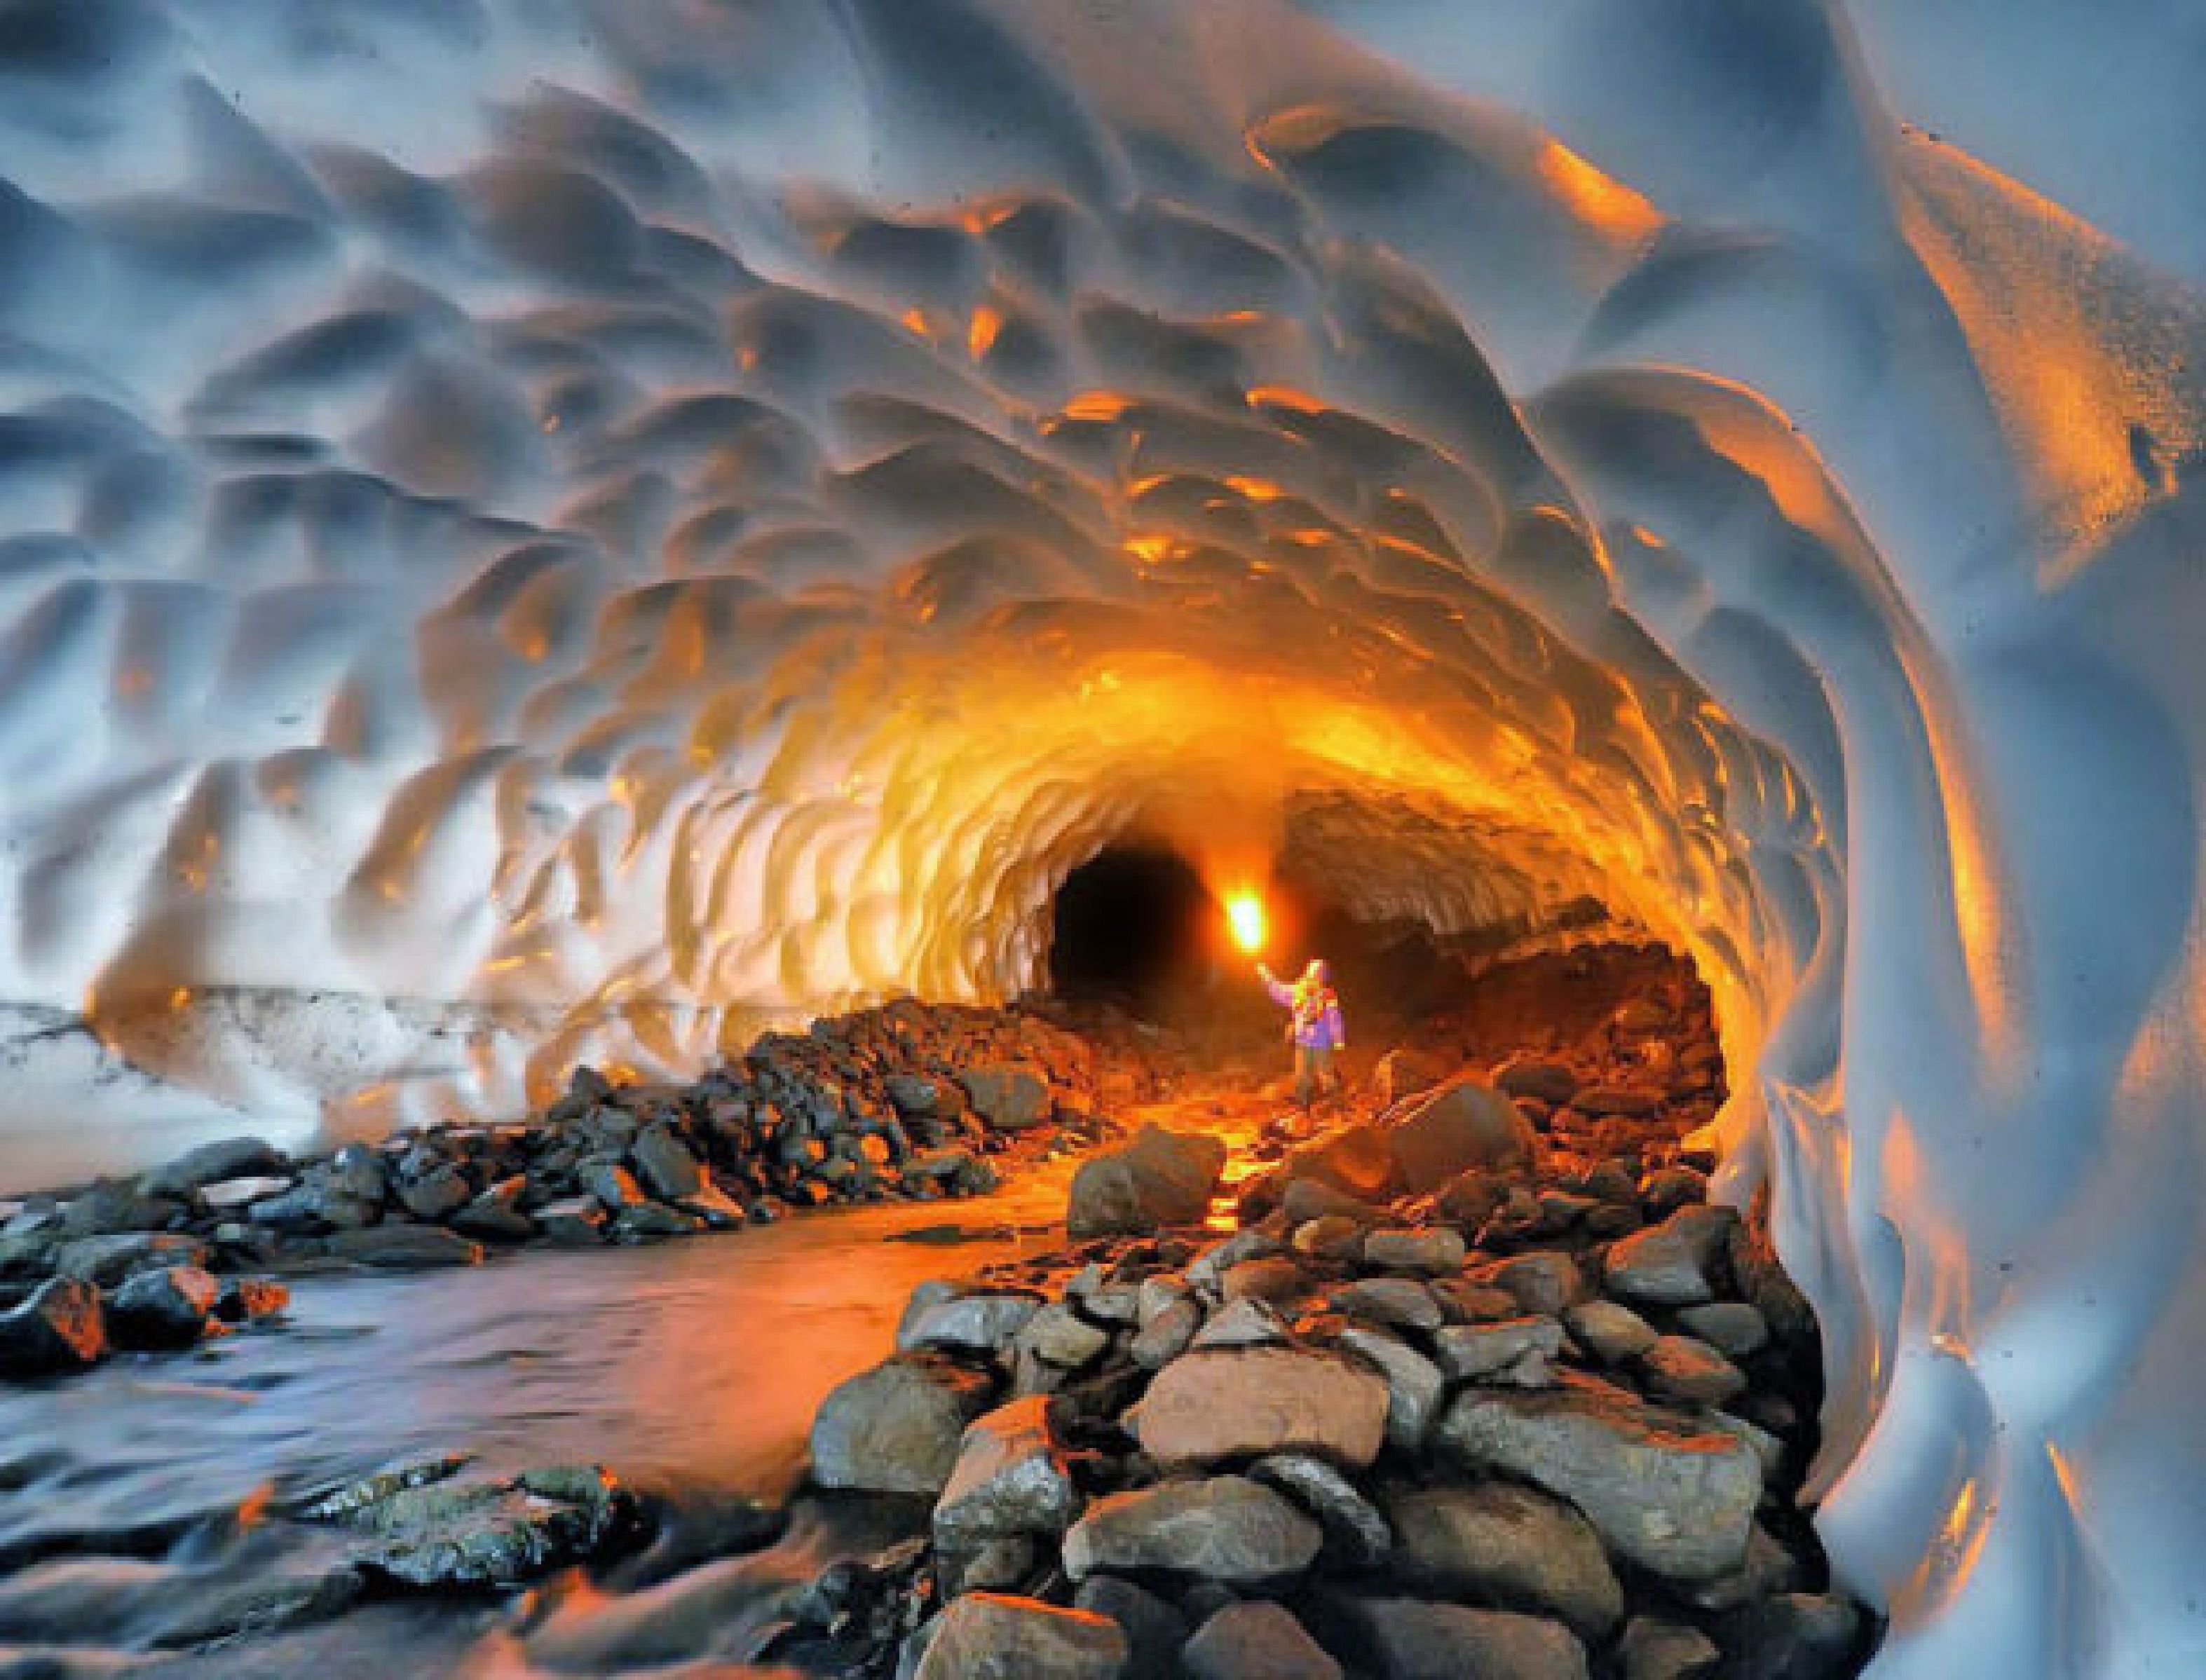 Inside Glacier Cave in Alaska